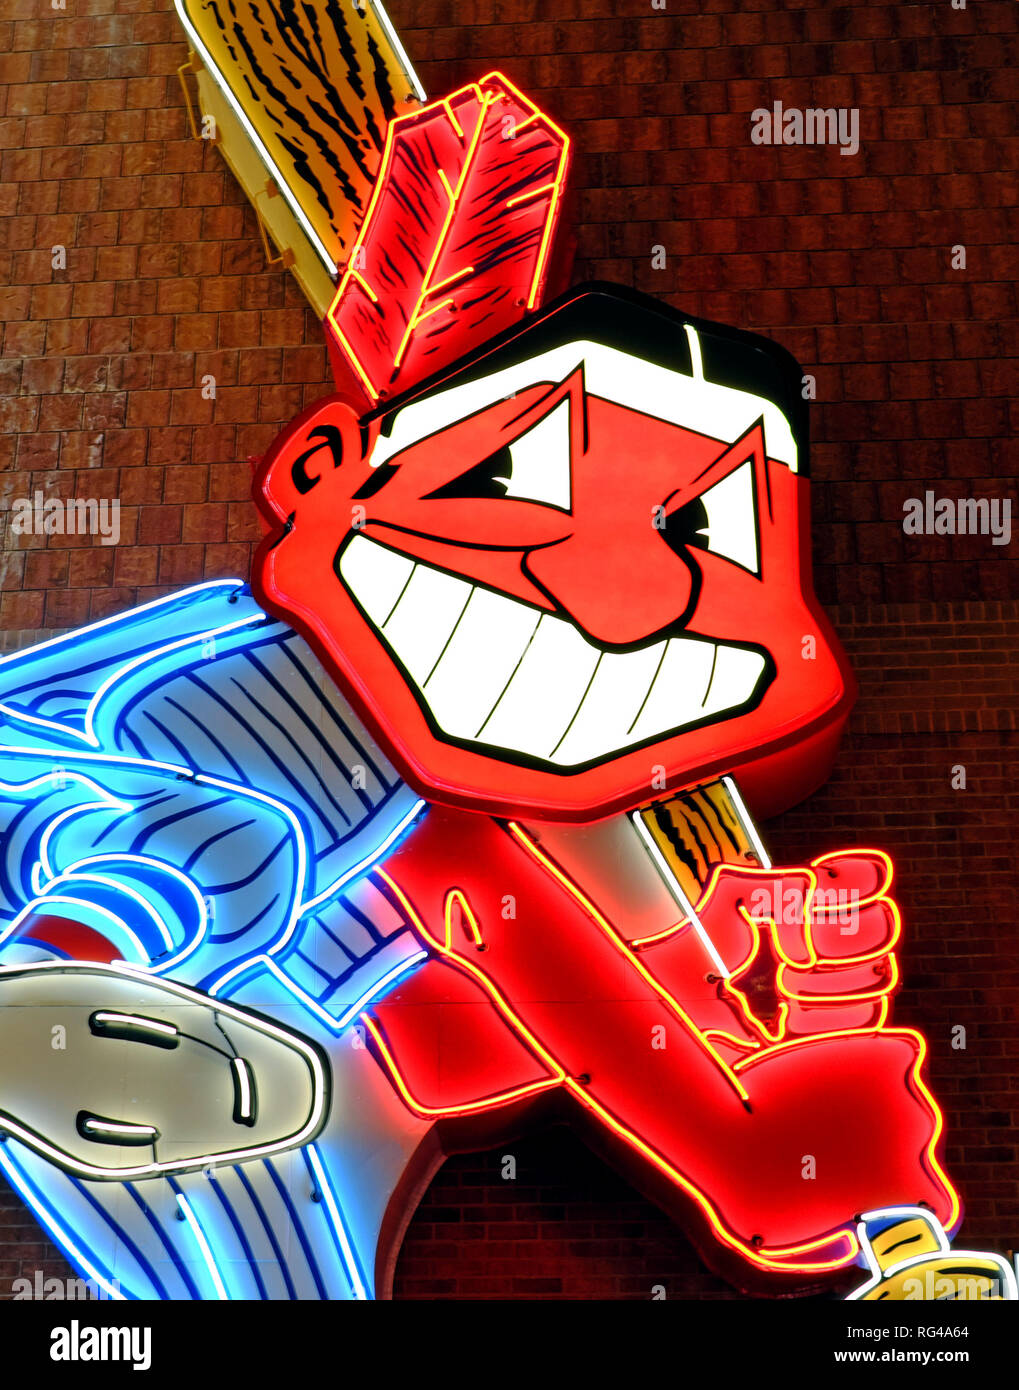 Les Indians de Cleveland Chef Wahoo logo néon, l'ancienne mascotte de l'équipe de baseball des Cleveland, Ohio. Banque D'Images